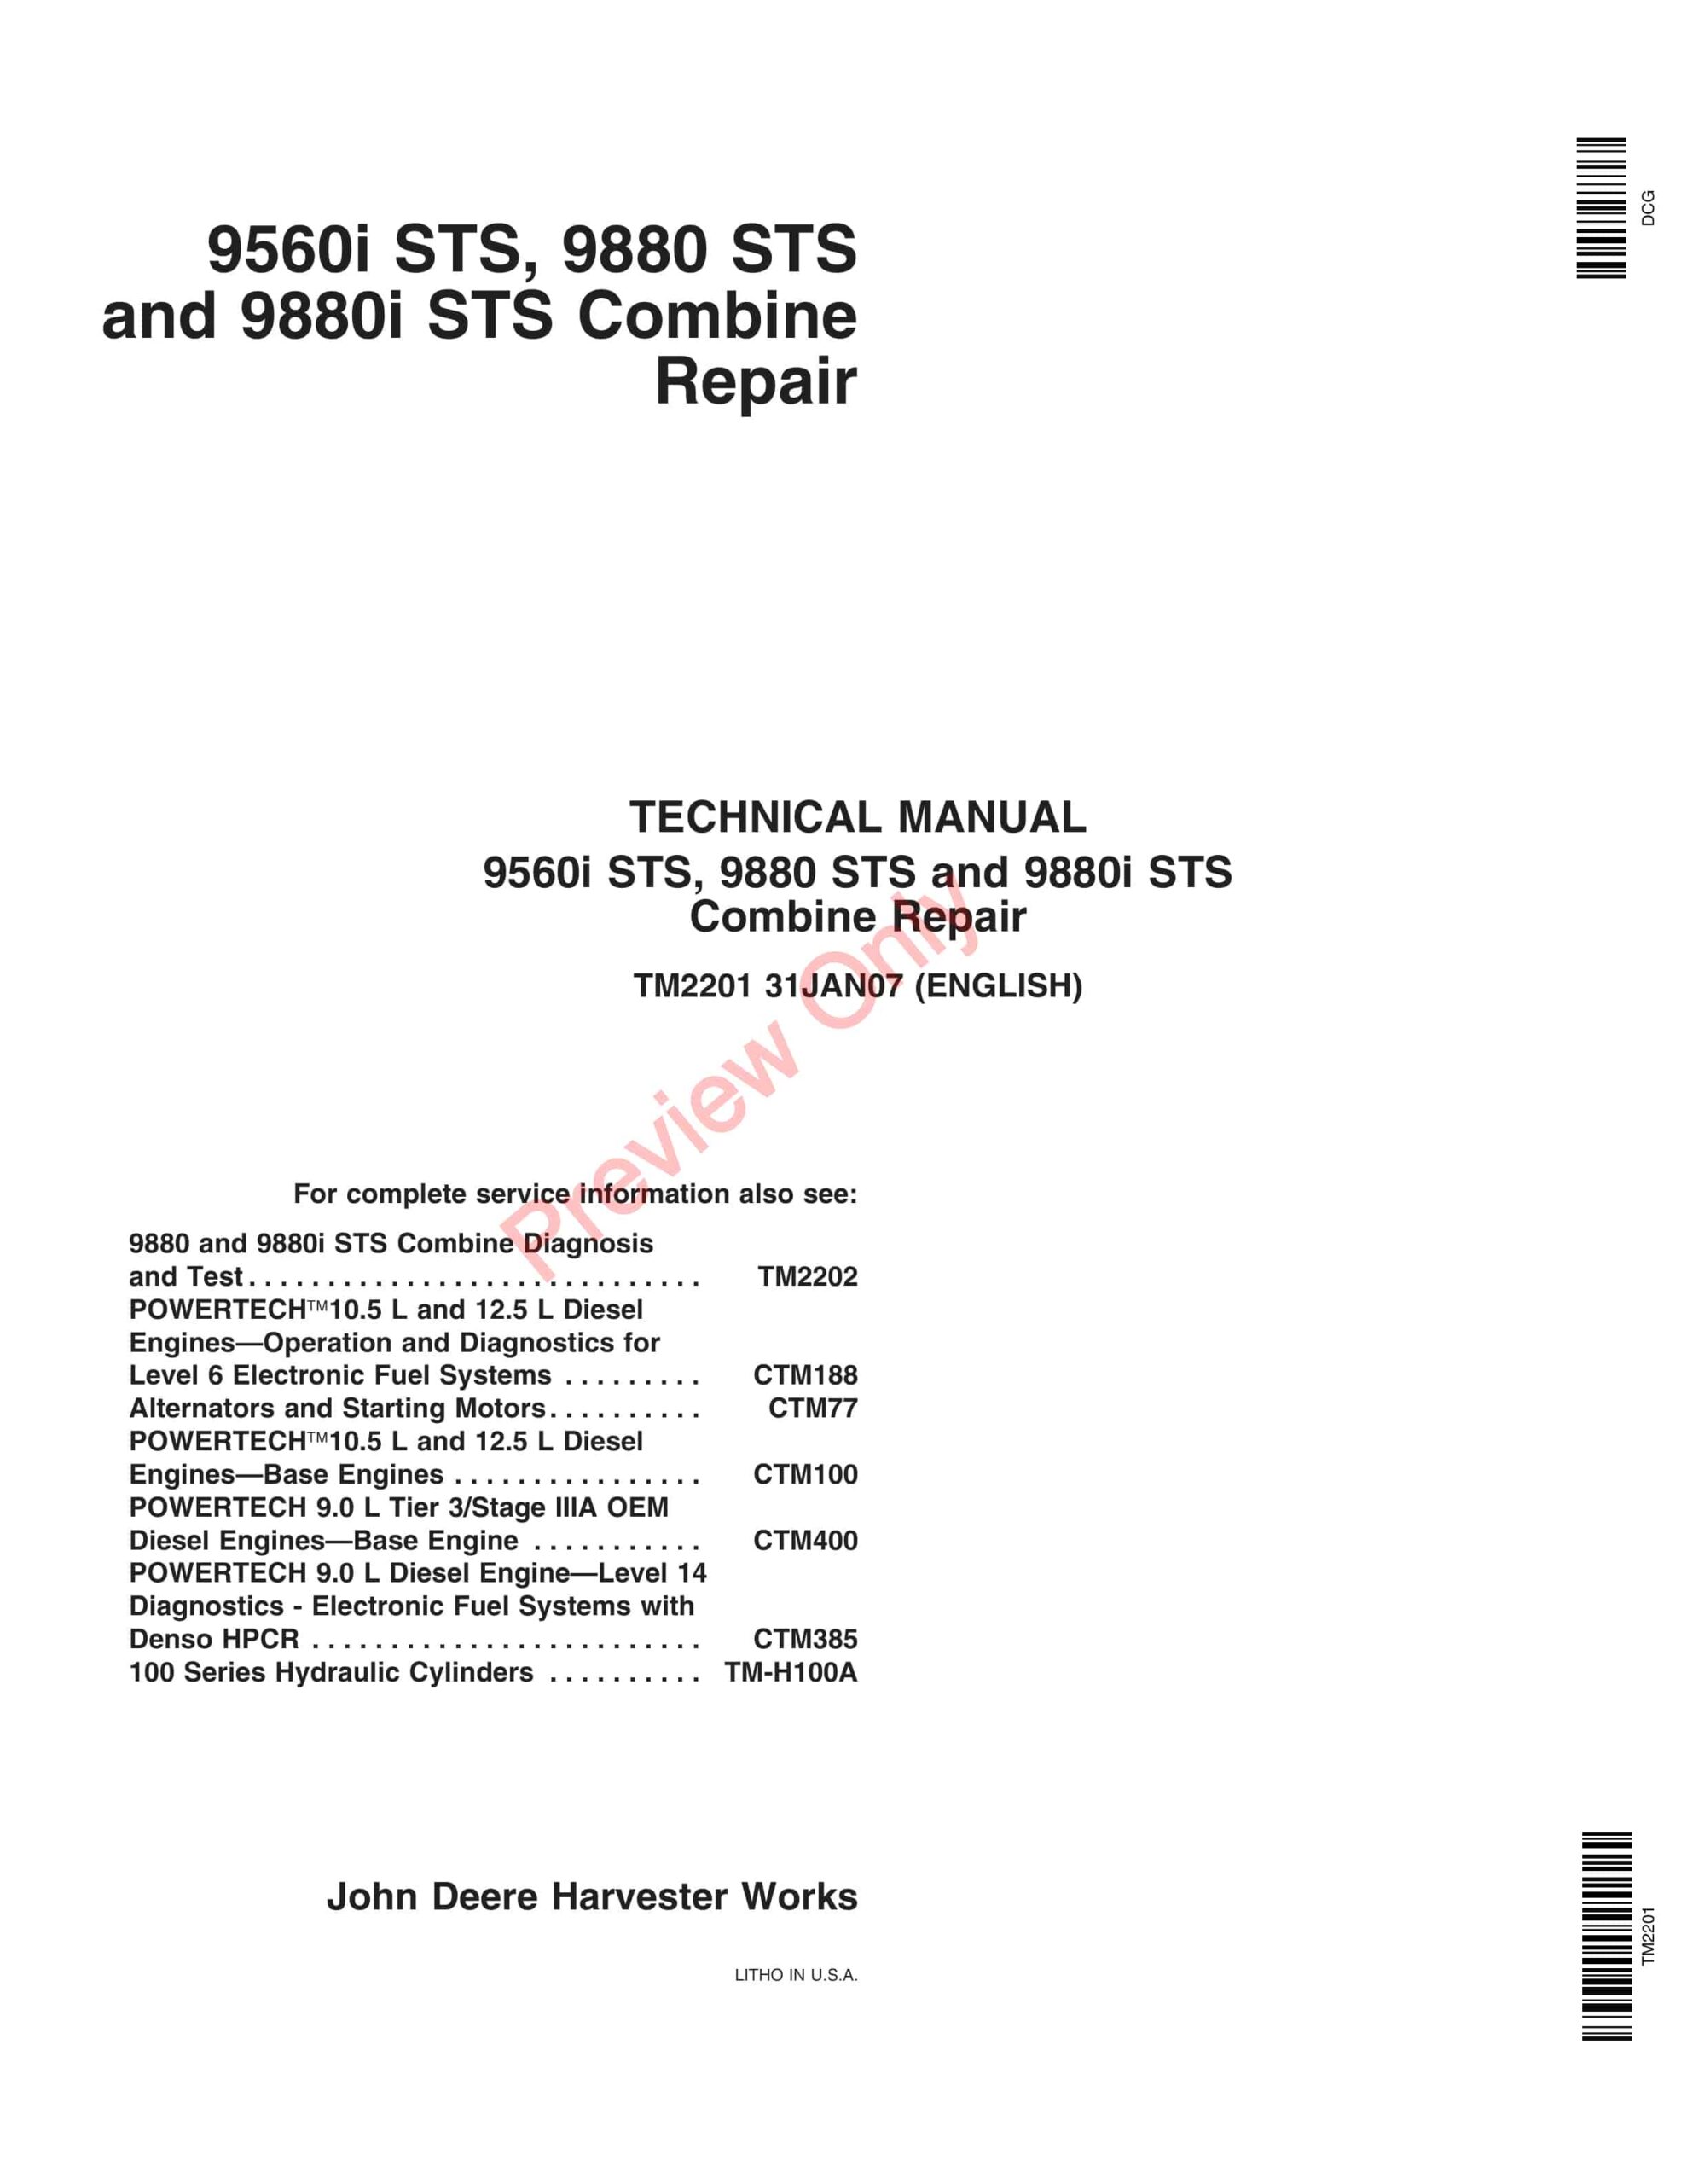 John Deere 9560i STS, 9880 STS, 9880i STS Combine Technical Manual TM2201 31JAN07-1